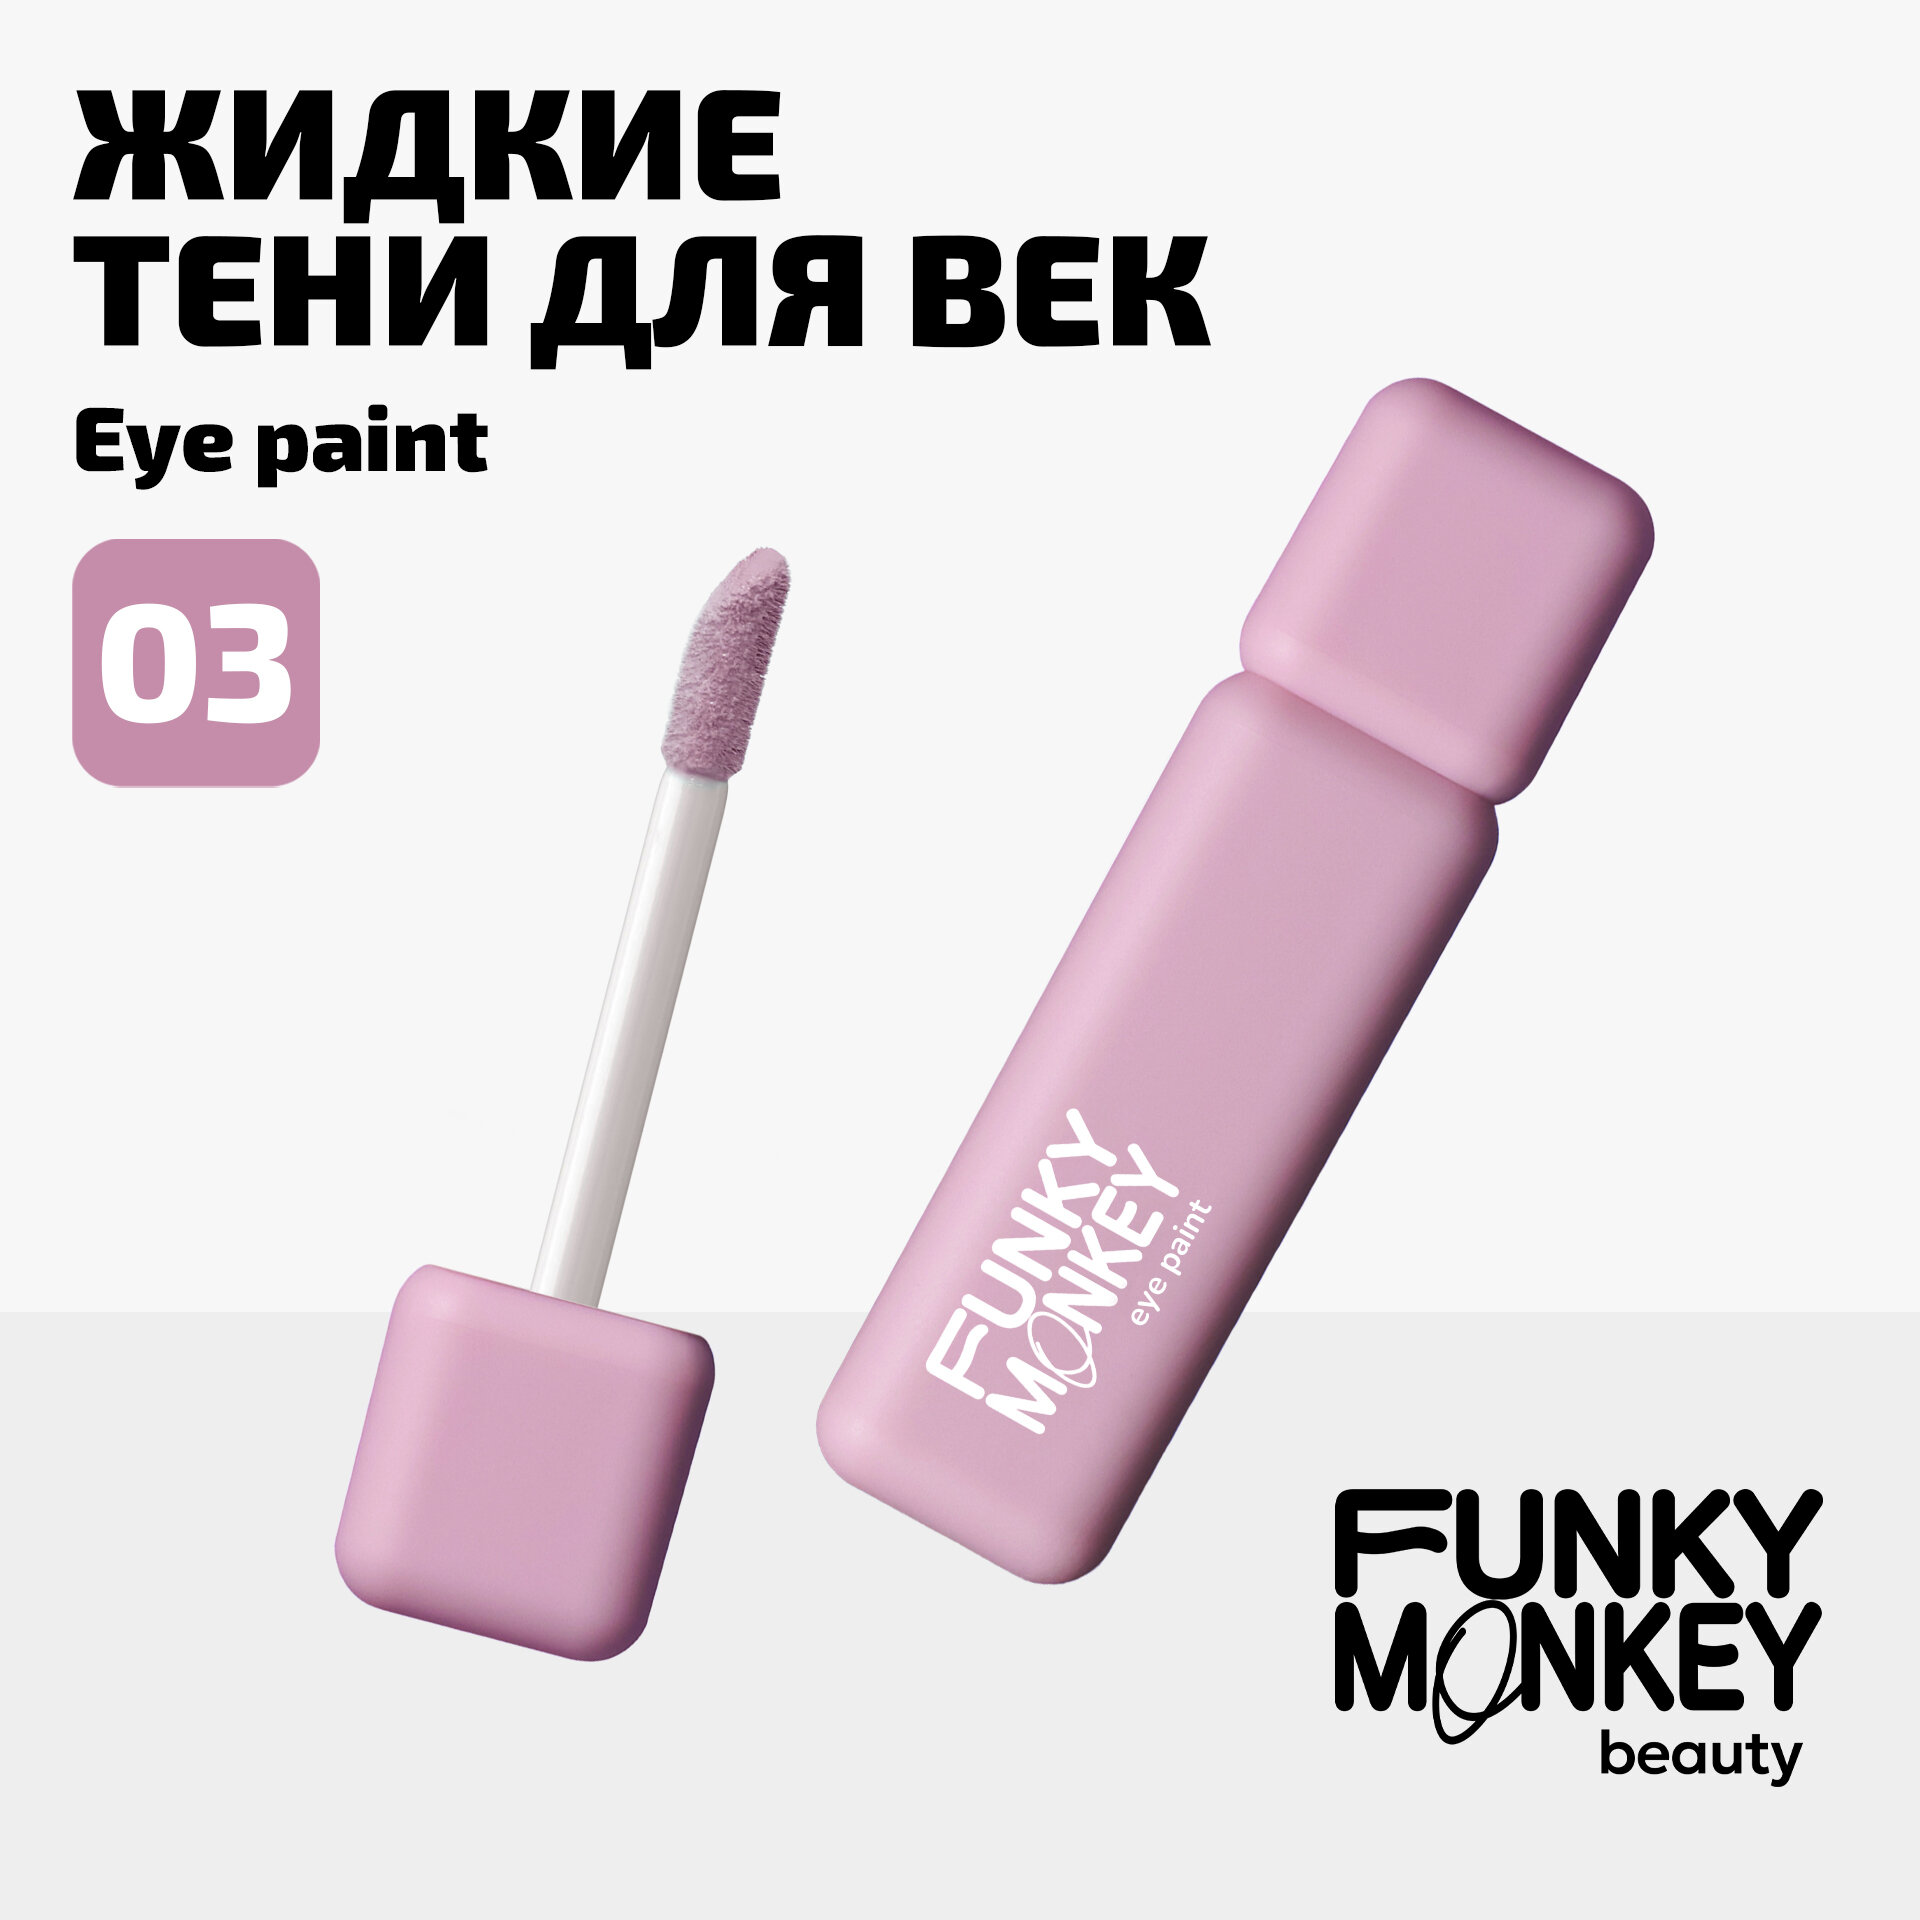 Funky Monkey Тени для век ультрапигментированные Eye paint тон 03 розовый